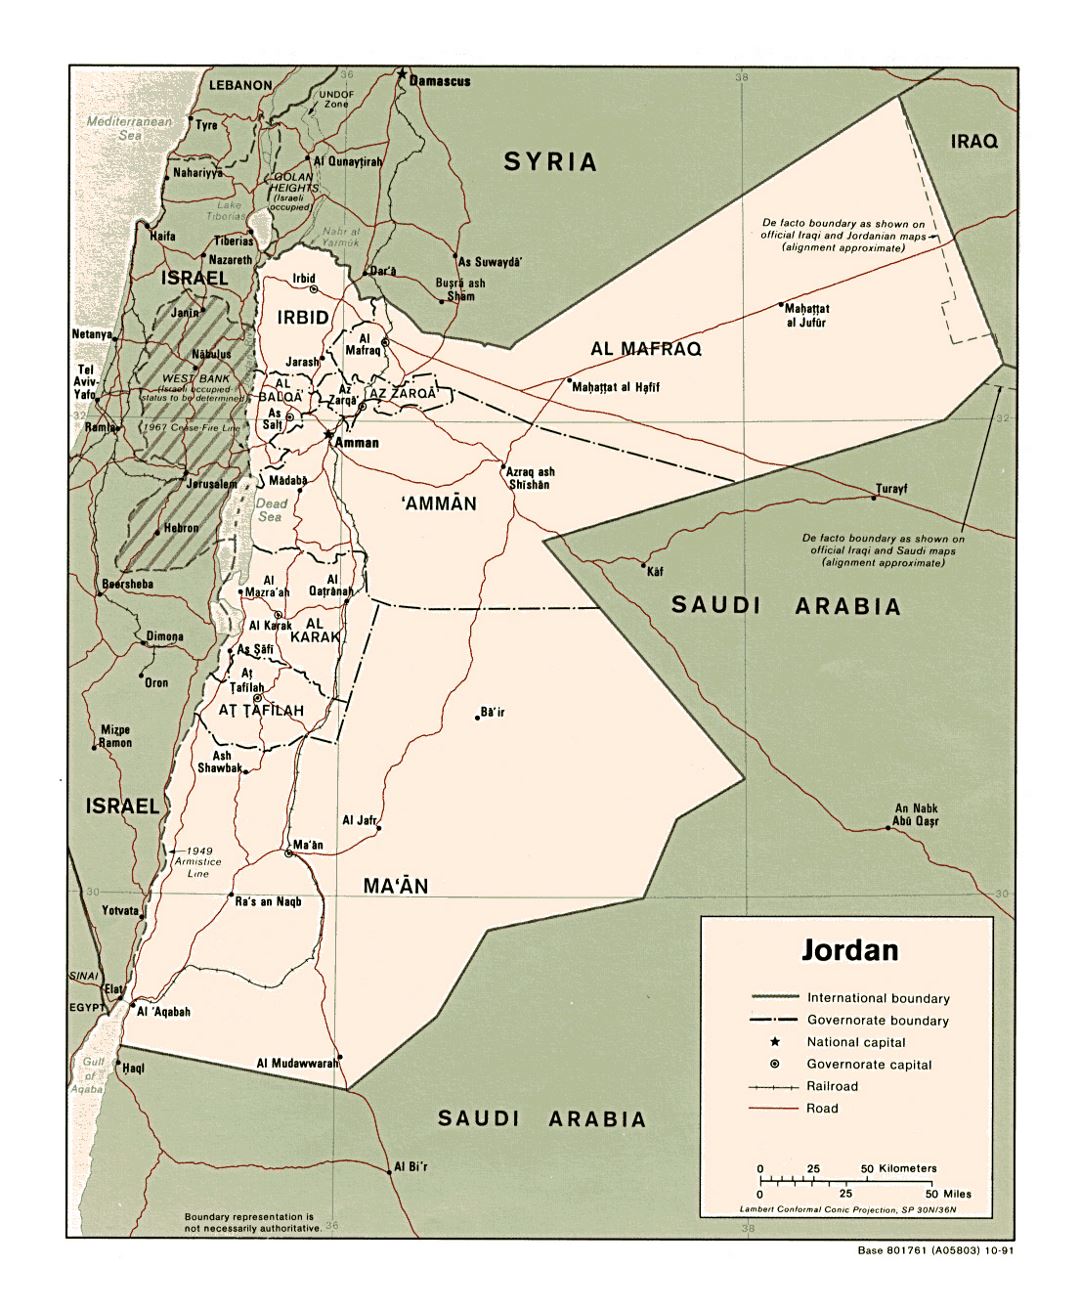 Detallado mapa político y administrativo de Jordania con carreteras, ferrocarriles y principales ciudades - 1991